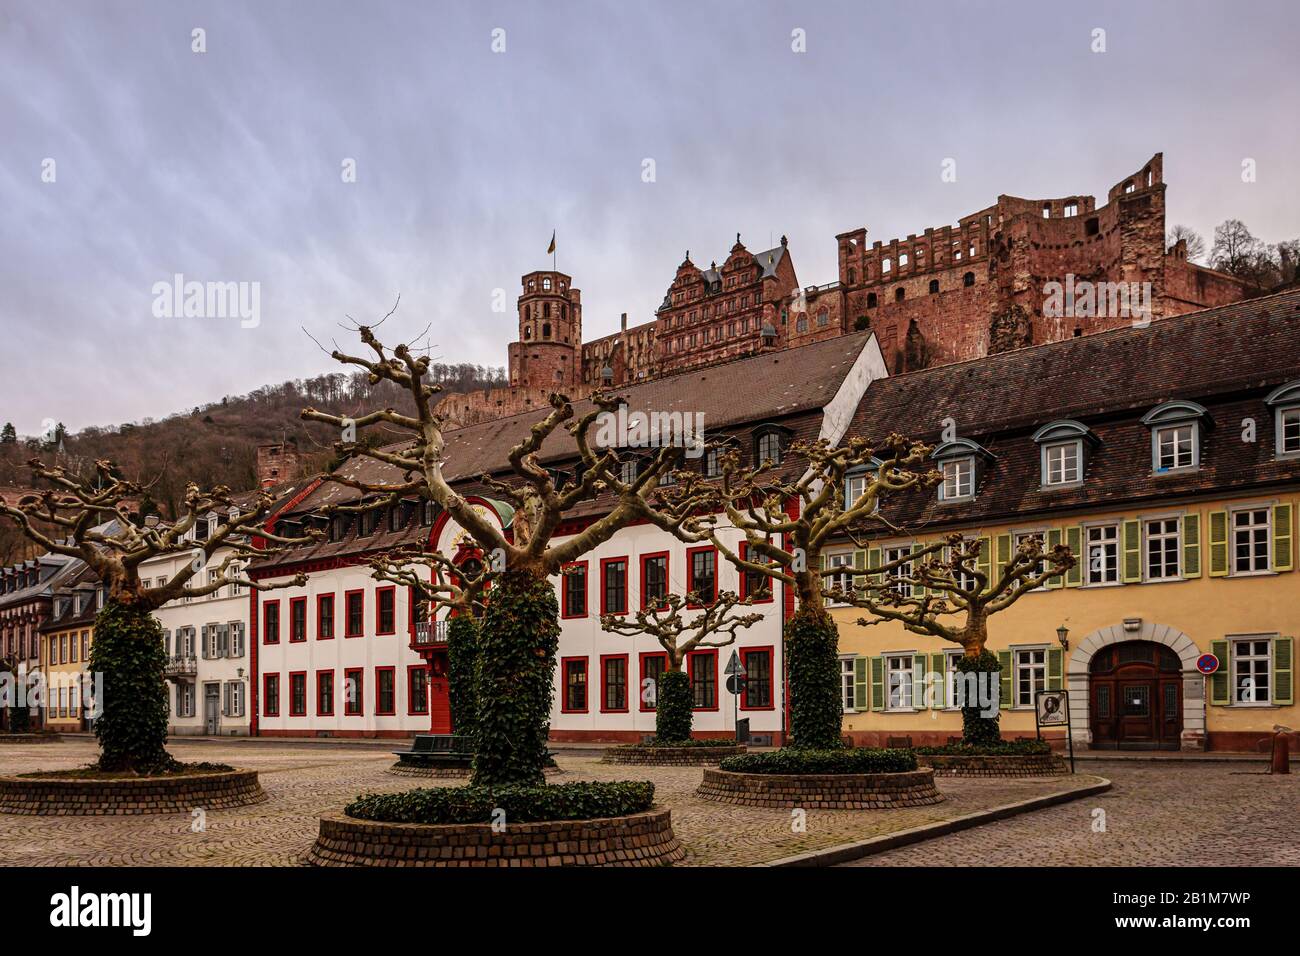 Heidelberg castle and 'Karlsplatz' square against sky at dusk Stock Photo